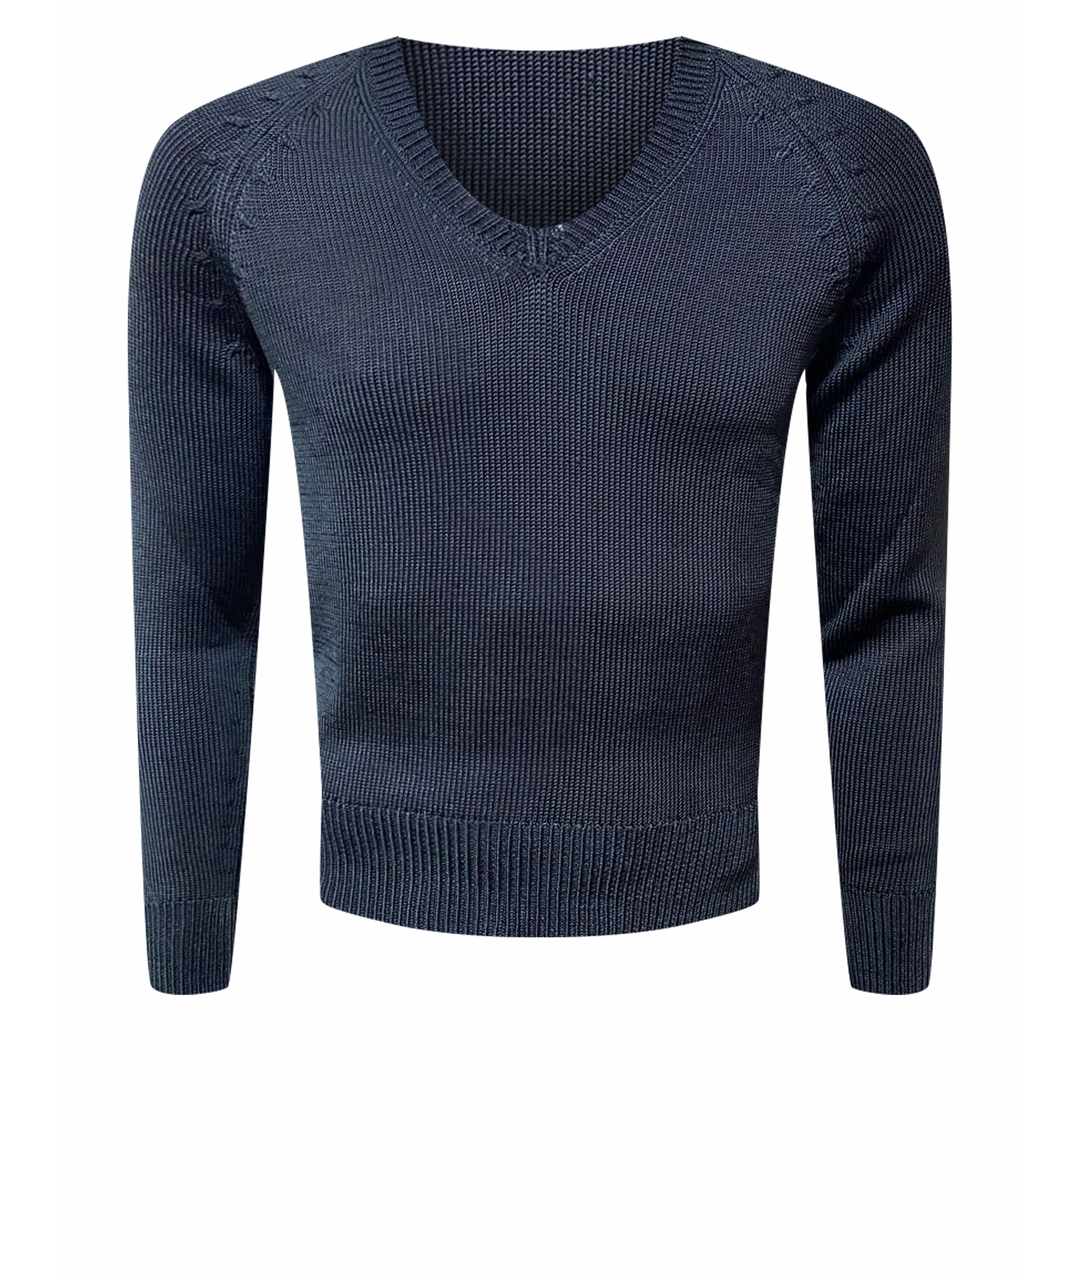 TOM FORD Черный шелковый джемпер / свитер, фото 1